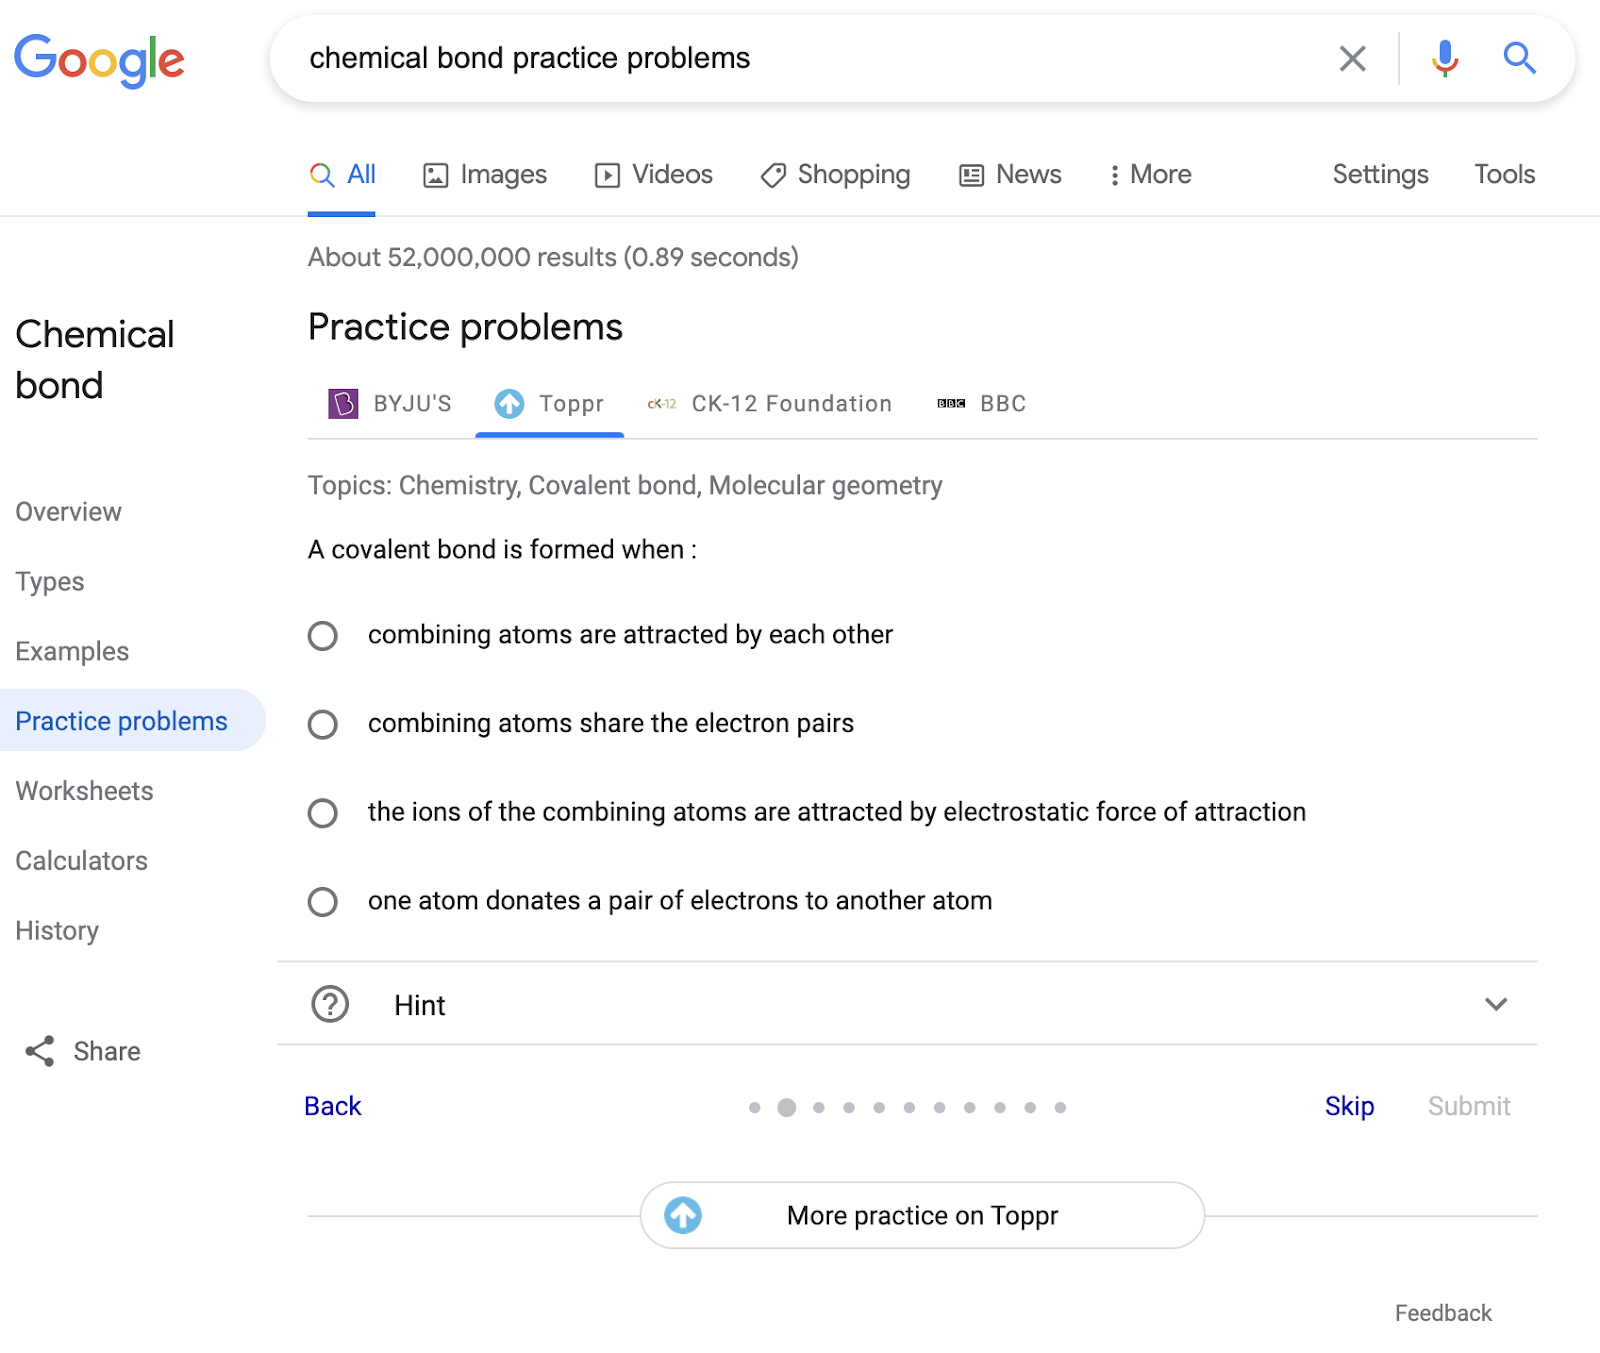 Google Search पर, प्रैक्टिस प्रॉब्लम के रिच रिज़ल्ट